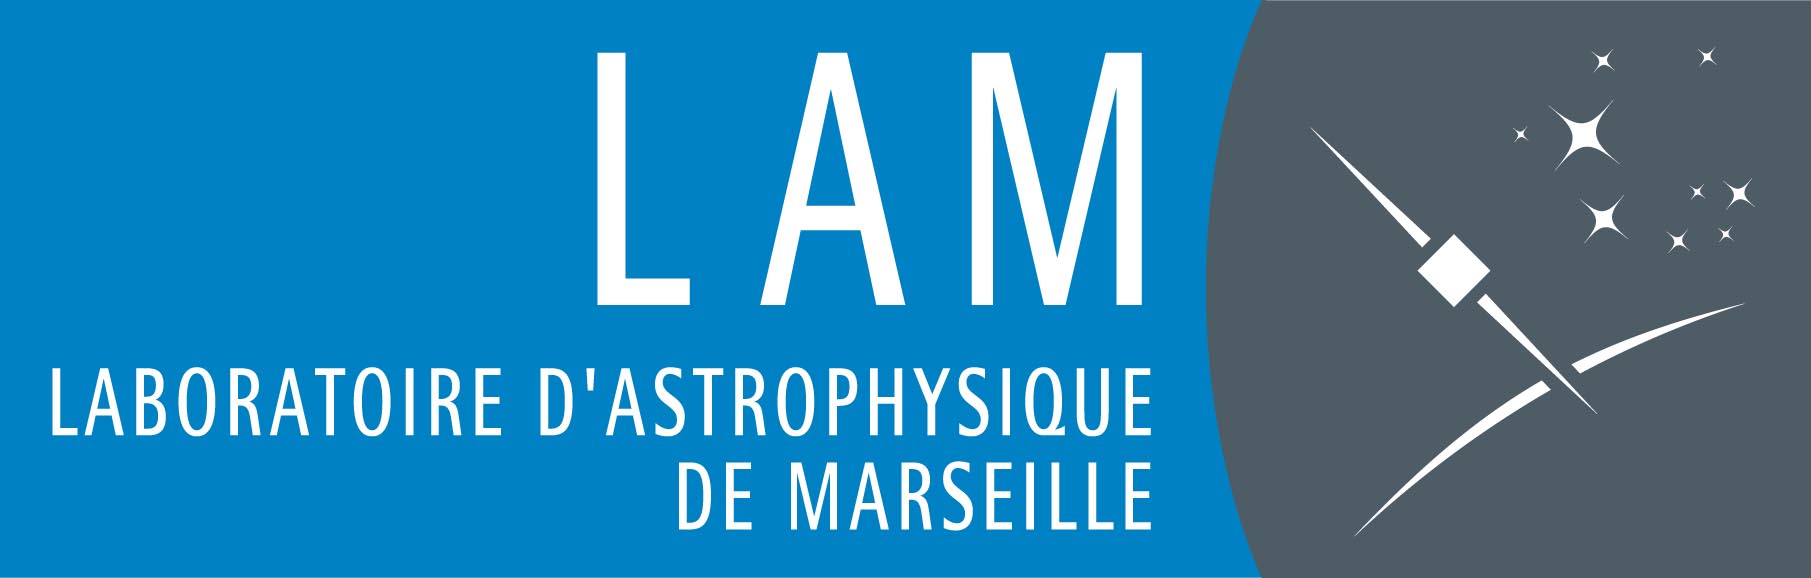 Laboratoire d'Astrophysique de Marseille